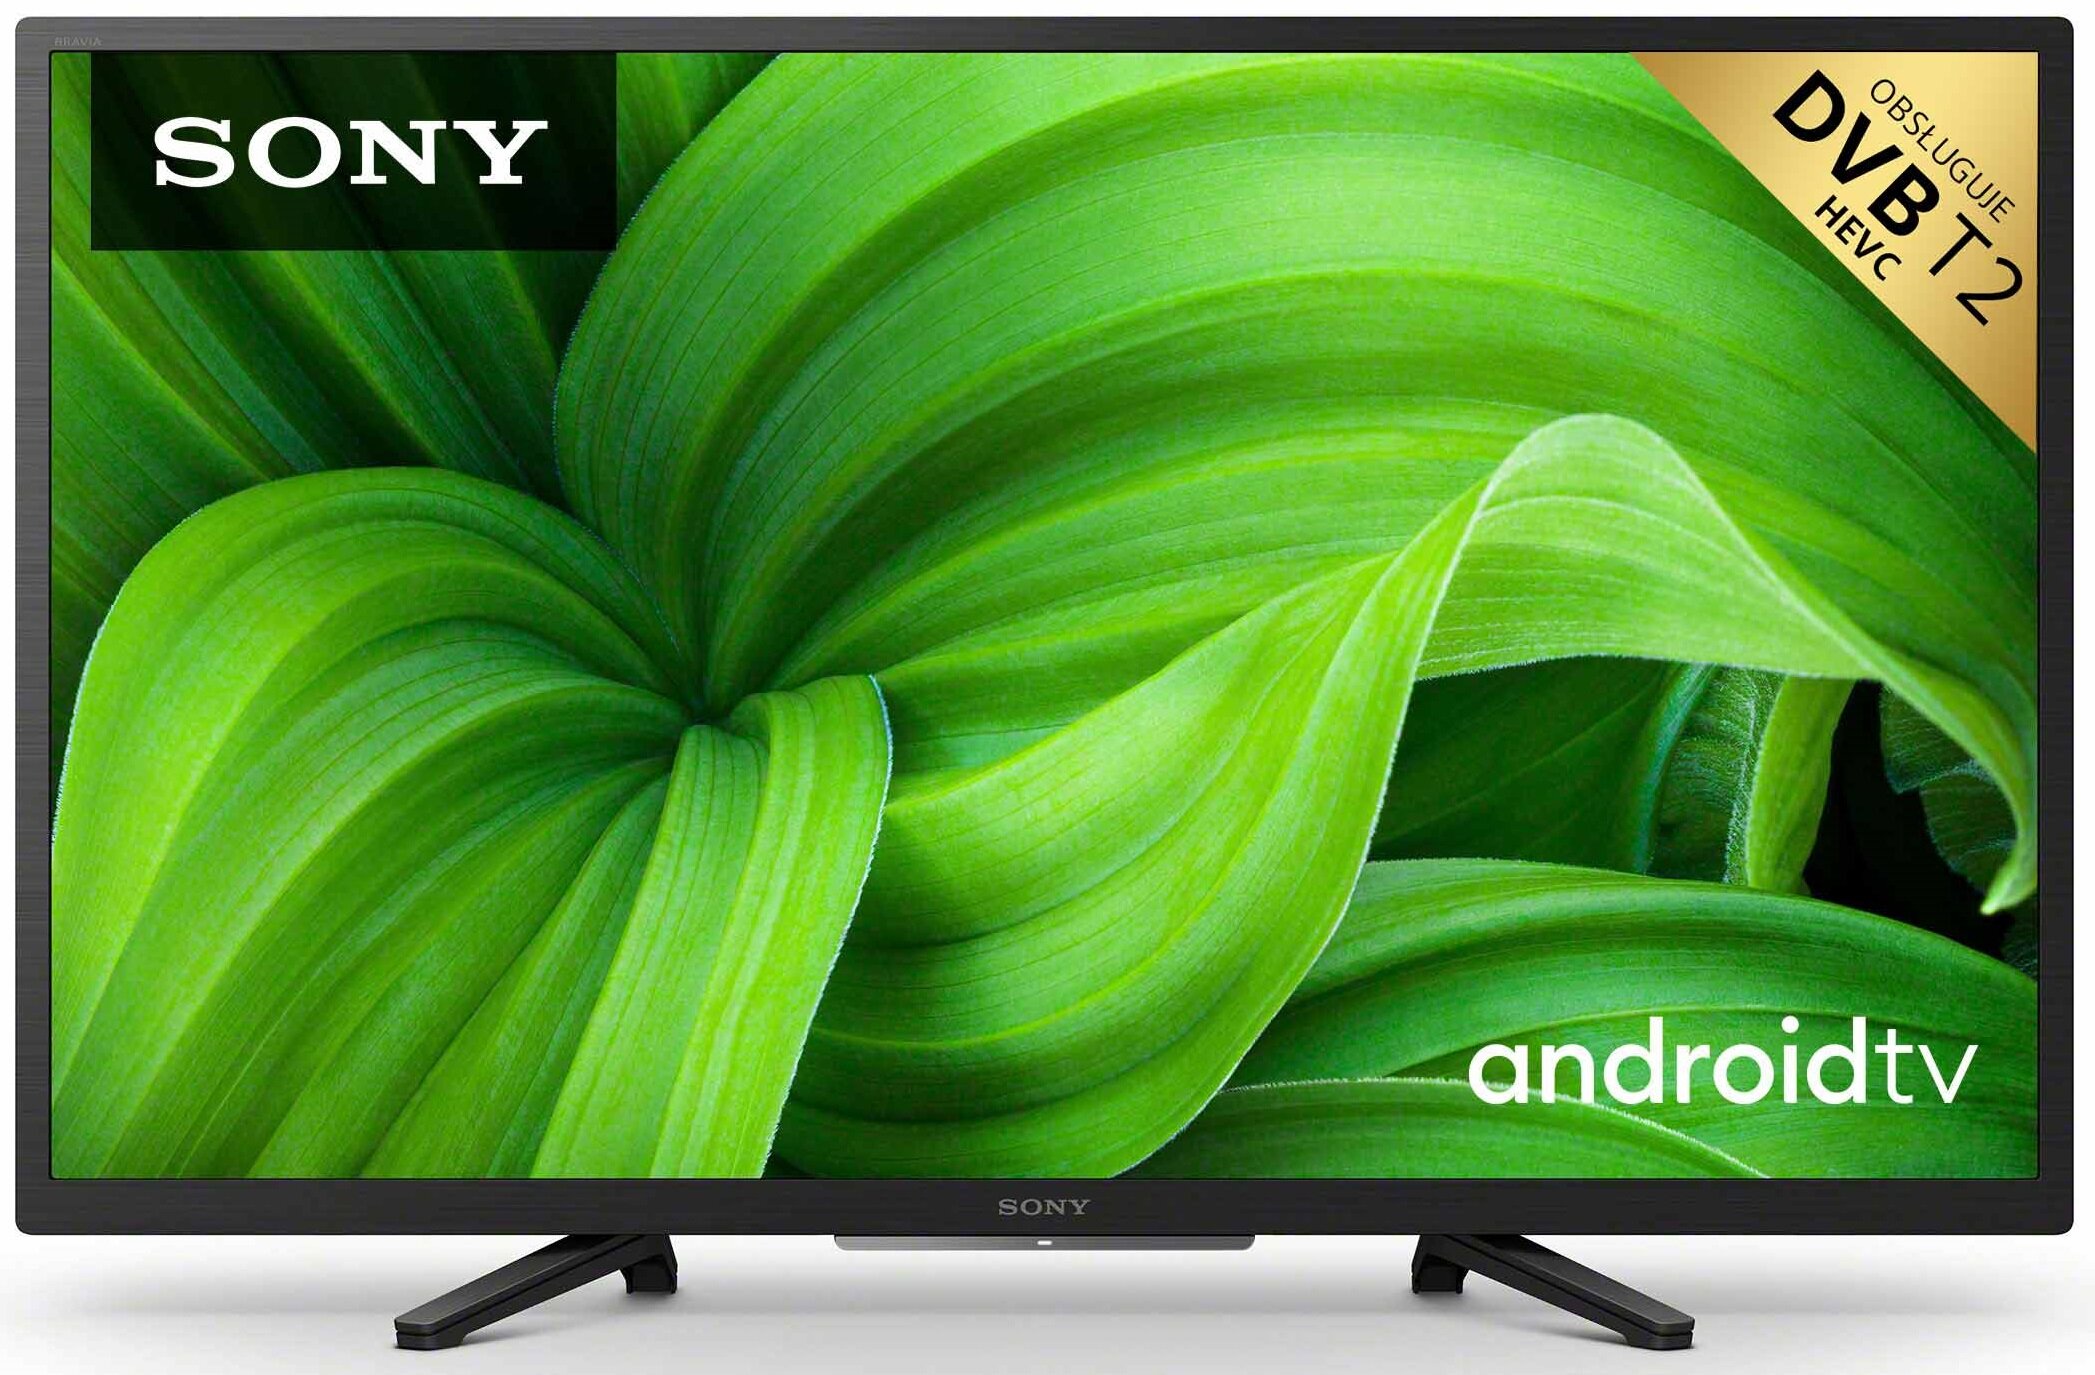 SONY KD-32W800 32" LED Android TV DVB-T2/HEVC/H.265 Telewizor - niskie ceny  i opinie w Media Expert